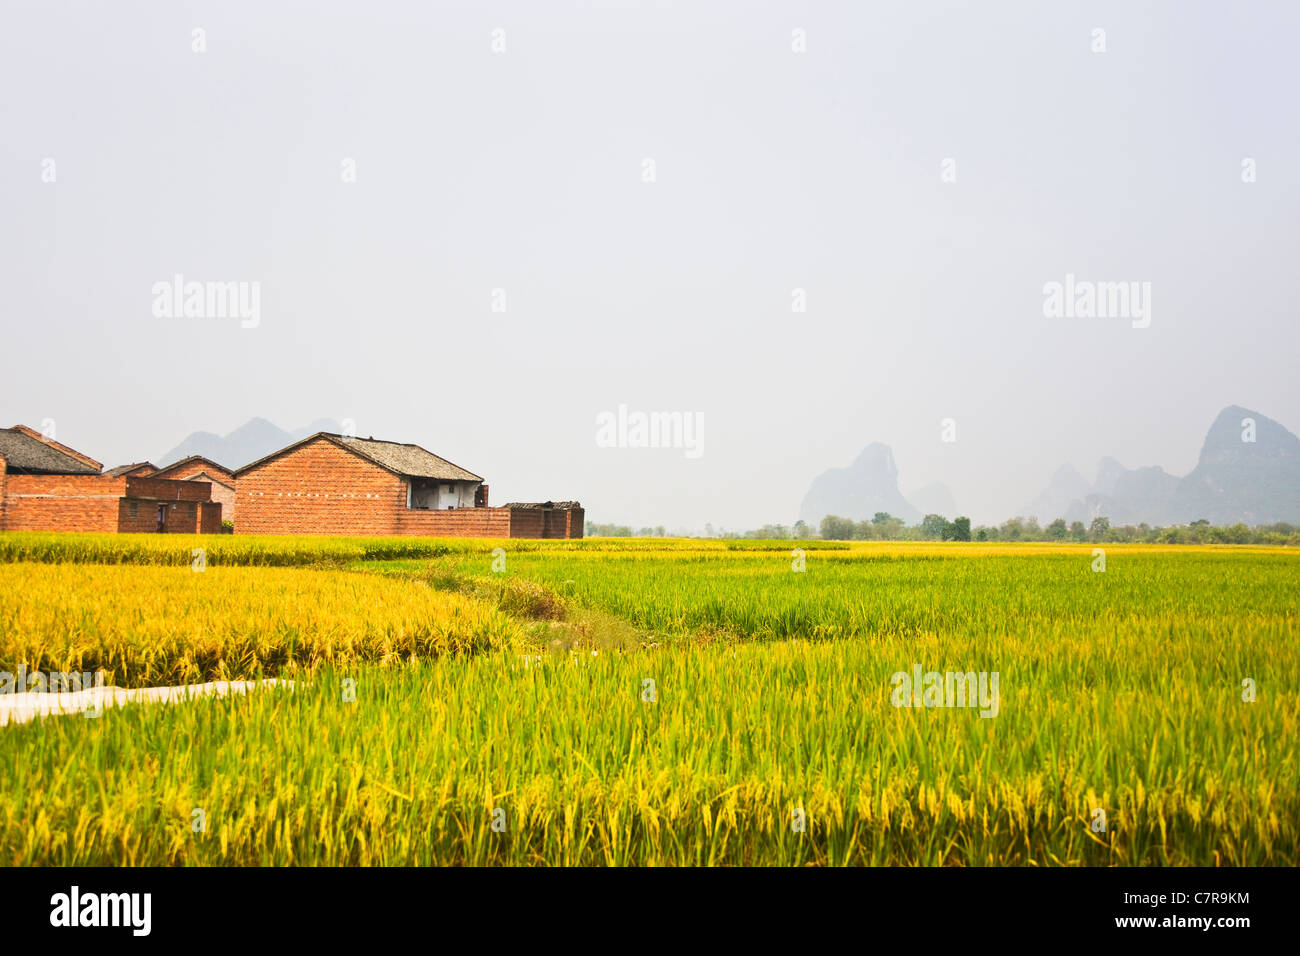 Limestone hills and rice paddy, Guangxi, China Stock Photo